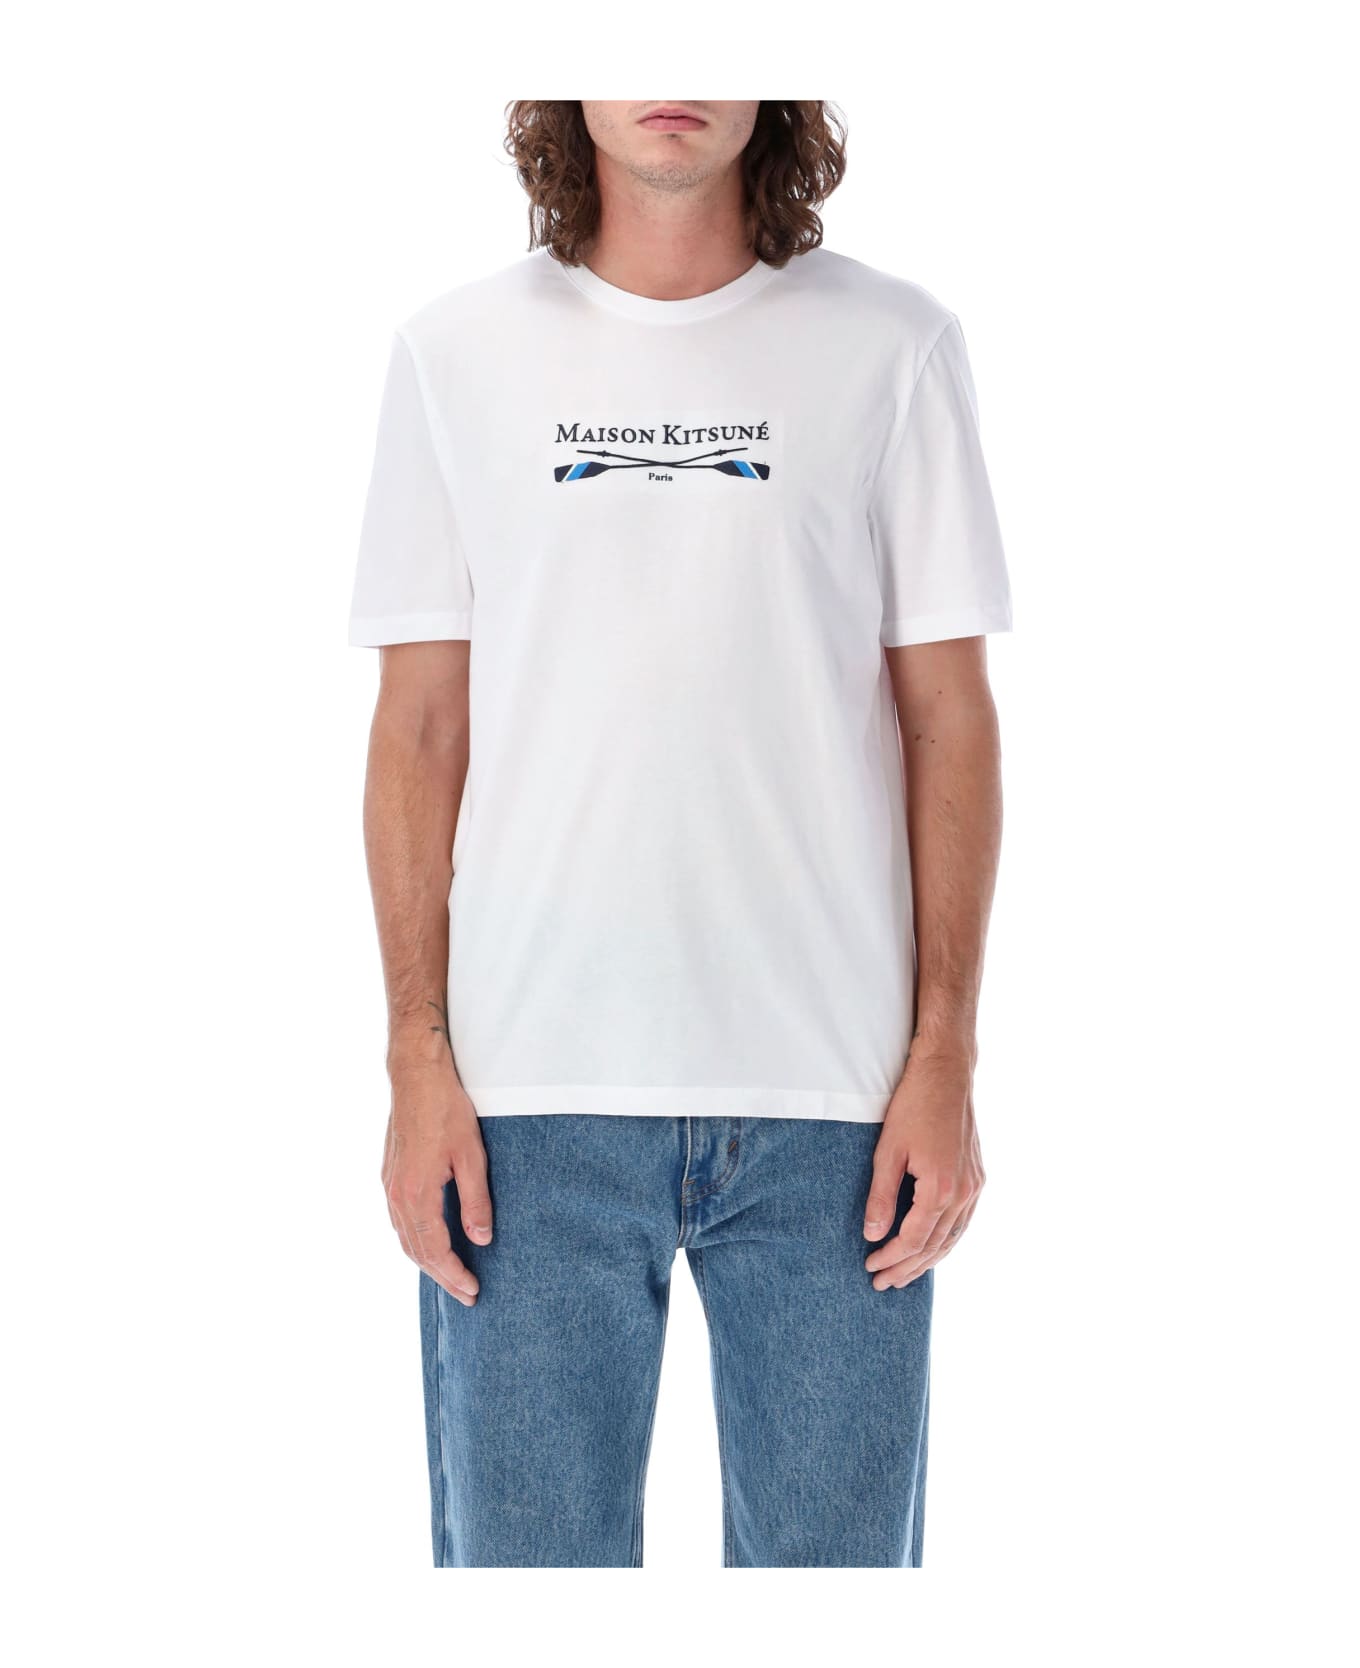 Maison Kitsuné Oars Regular T-shirt - White シャツ